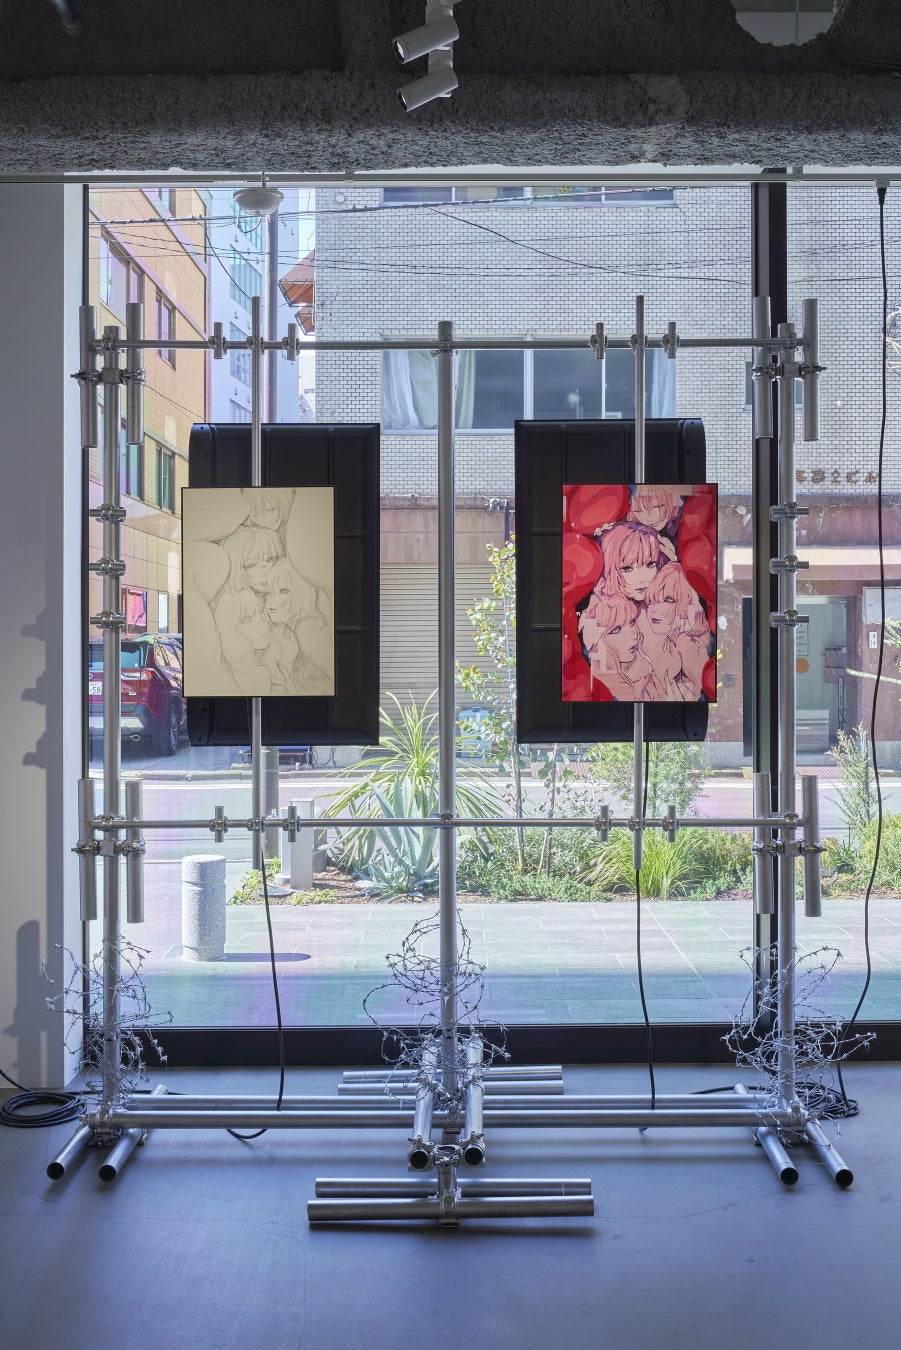 東京都神保町の新たなアートギャラリー「New Gallery」本日開廊。こけら落とし展示となる、YOASOBI「夜に駆け...